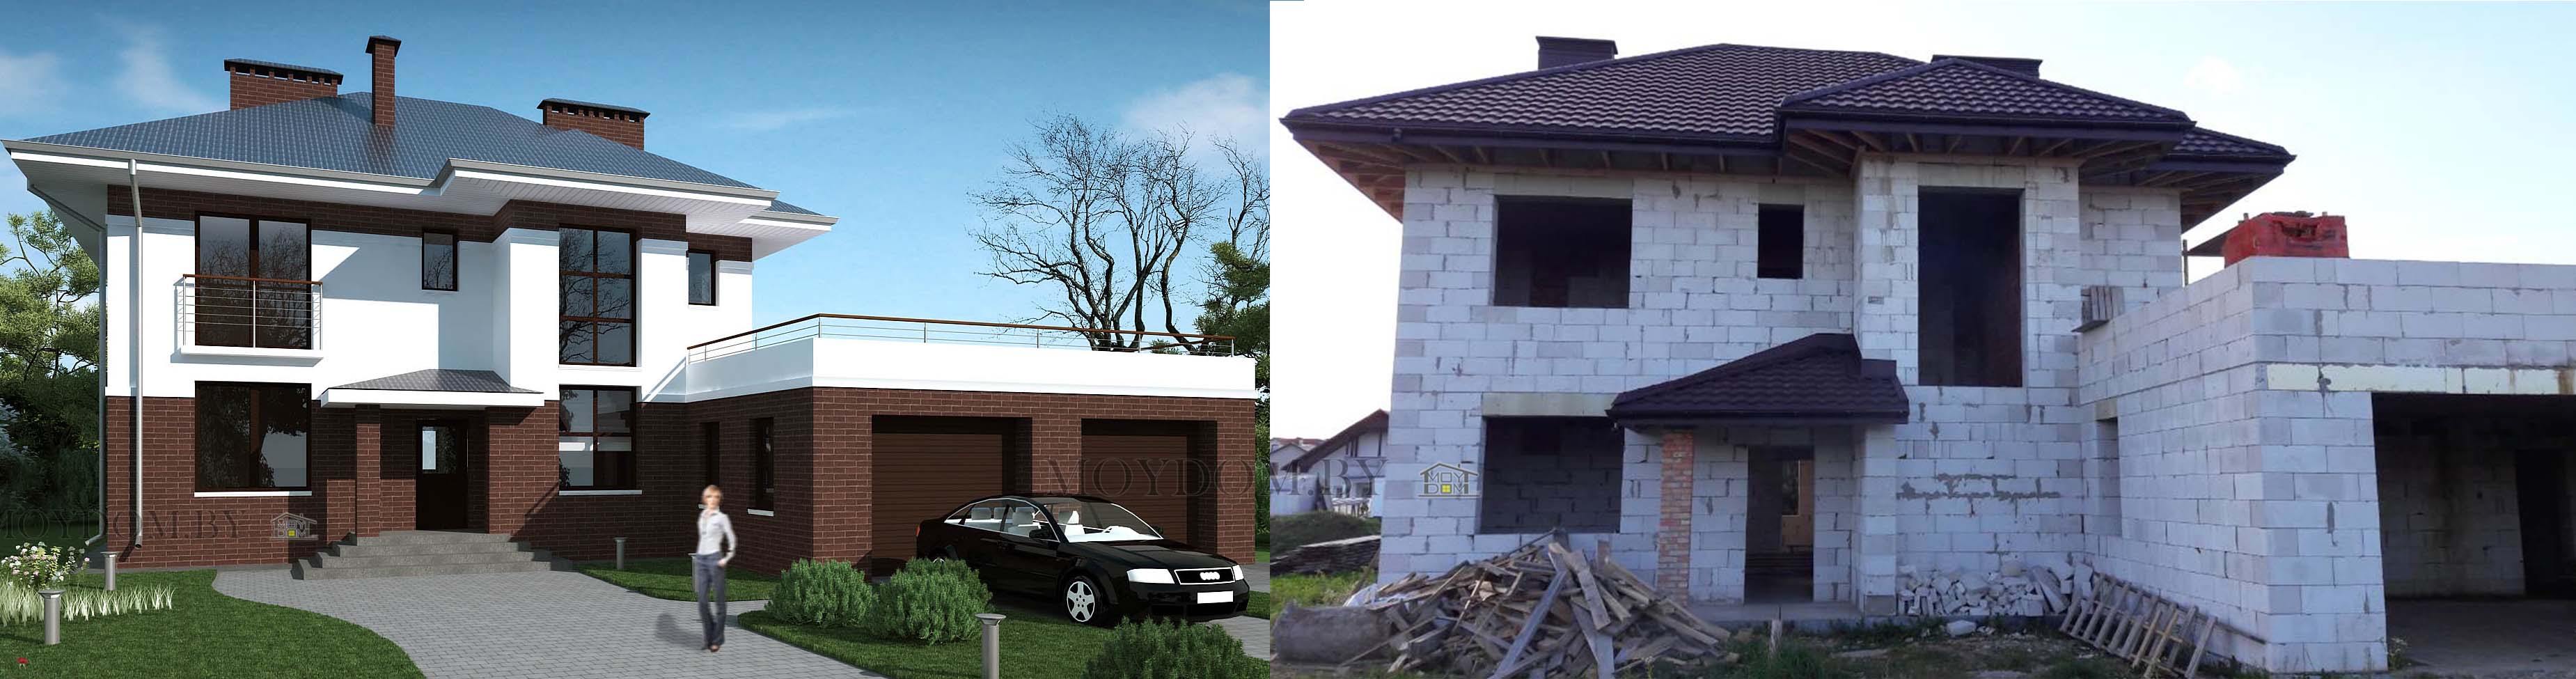 проект респектабельного двухэтажного дома с гаражом на две машины